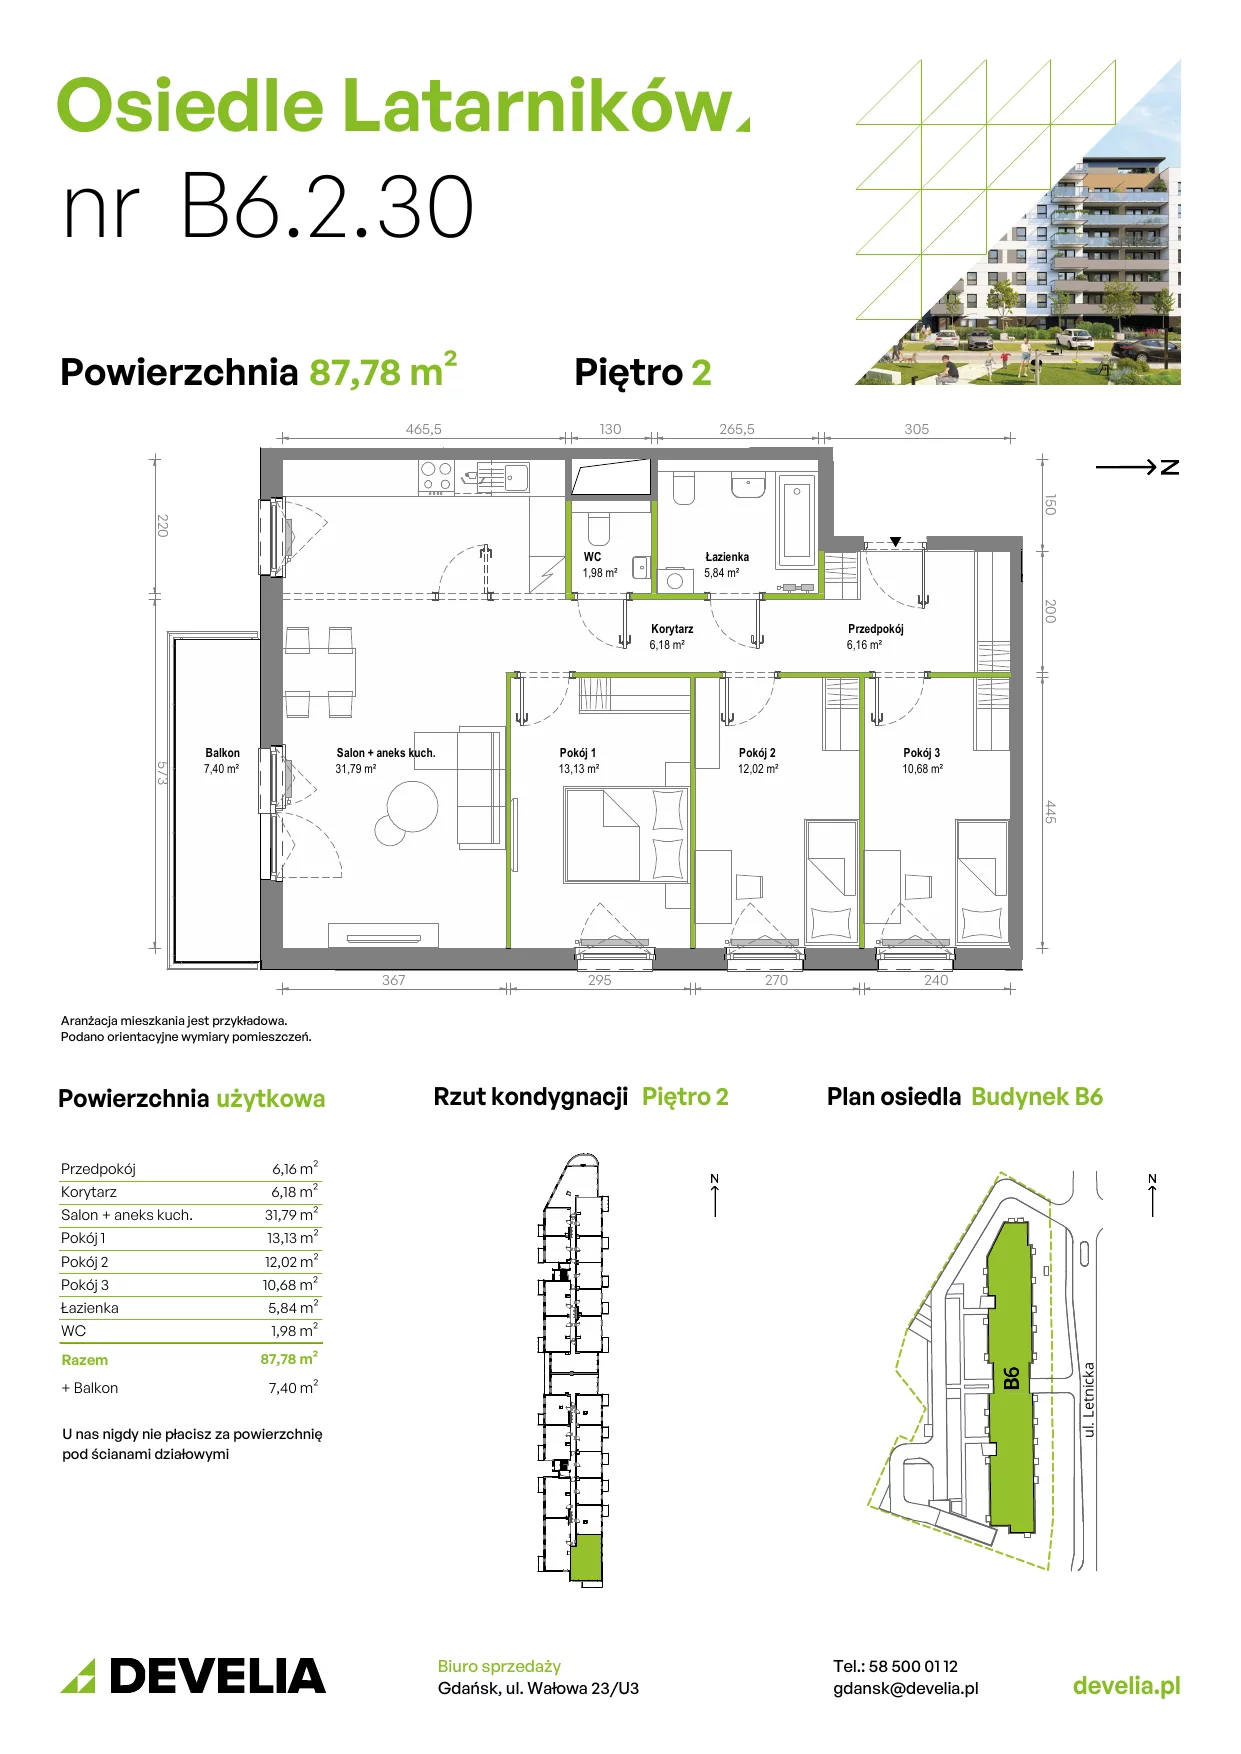 Mieszkanie 87,69 m², piętro 2, oferta nr B6.2.030, Osiedle Latarników, Gdańsk, Letnica, ul. Letnicka 1